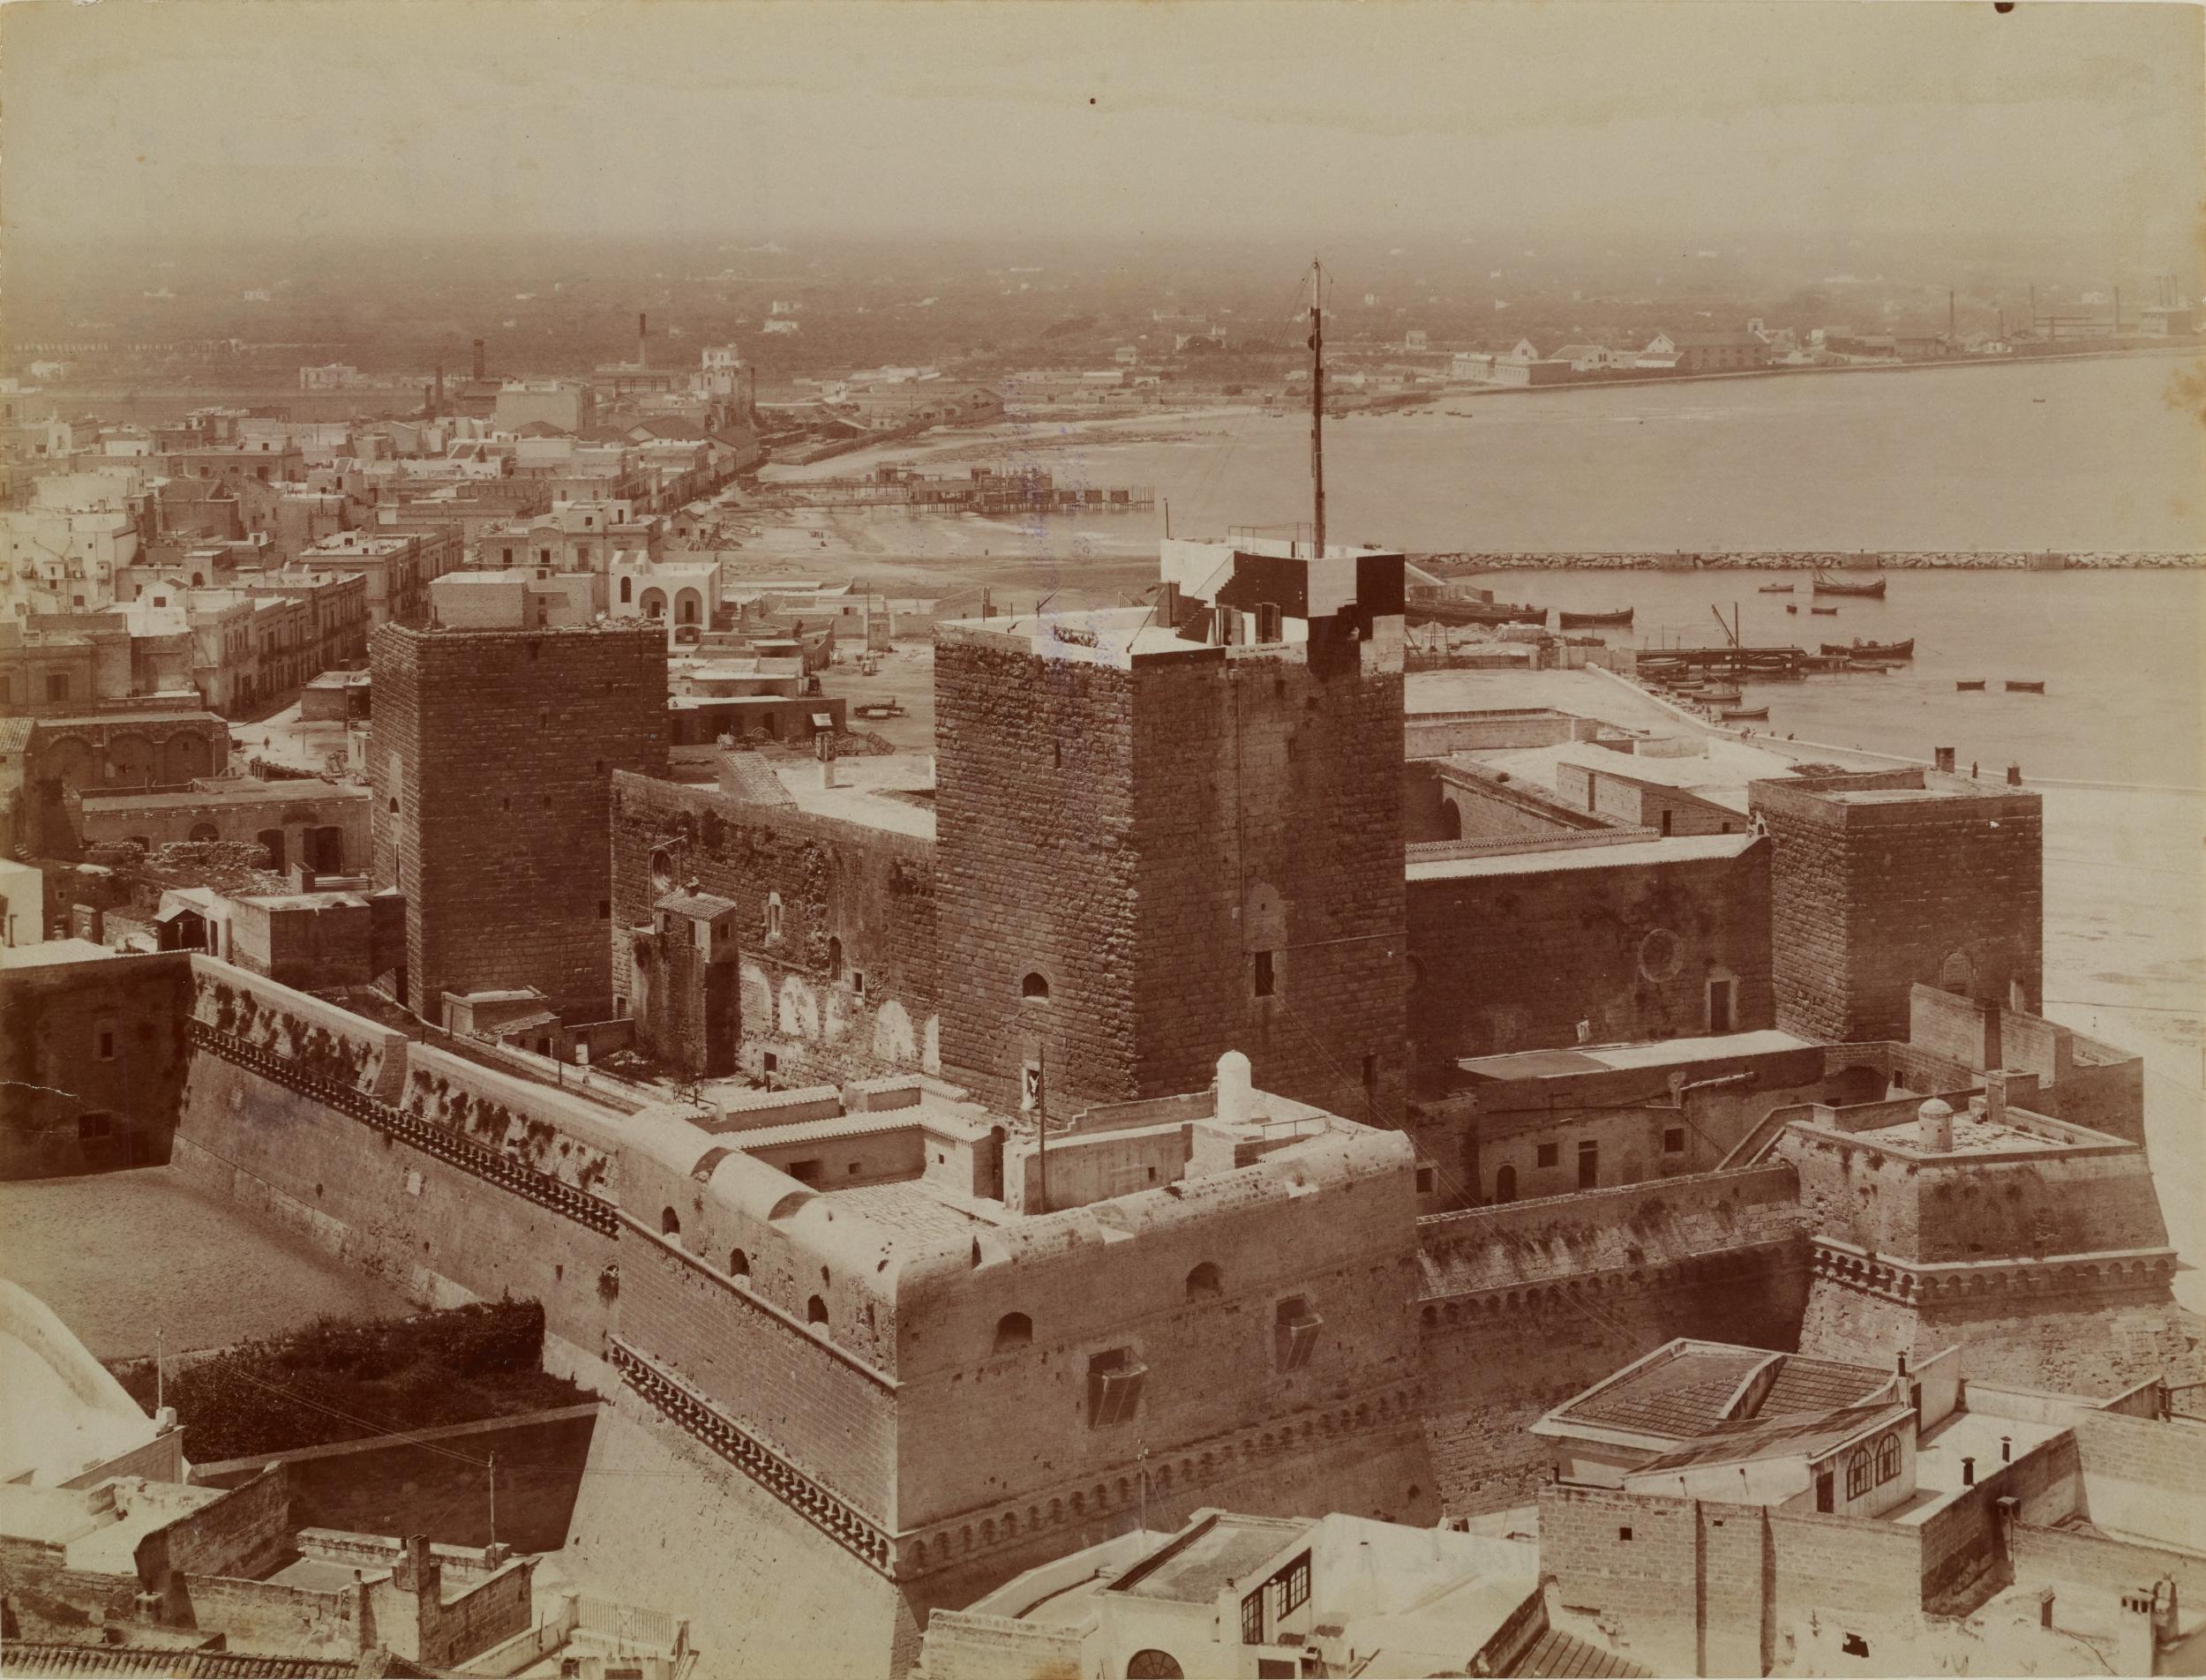 Fotografo non identificato, Bari - Castello, veduta generale esterna,  1876-1900, albumina/carta, MPI6023072